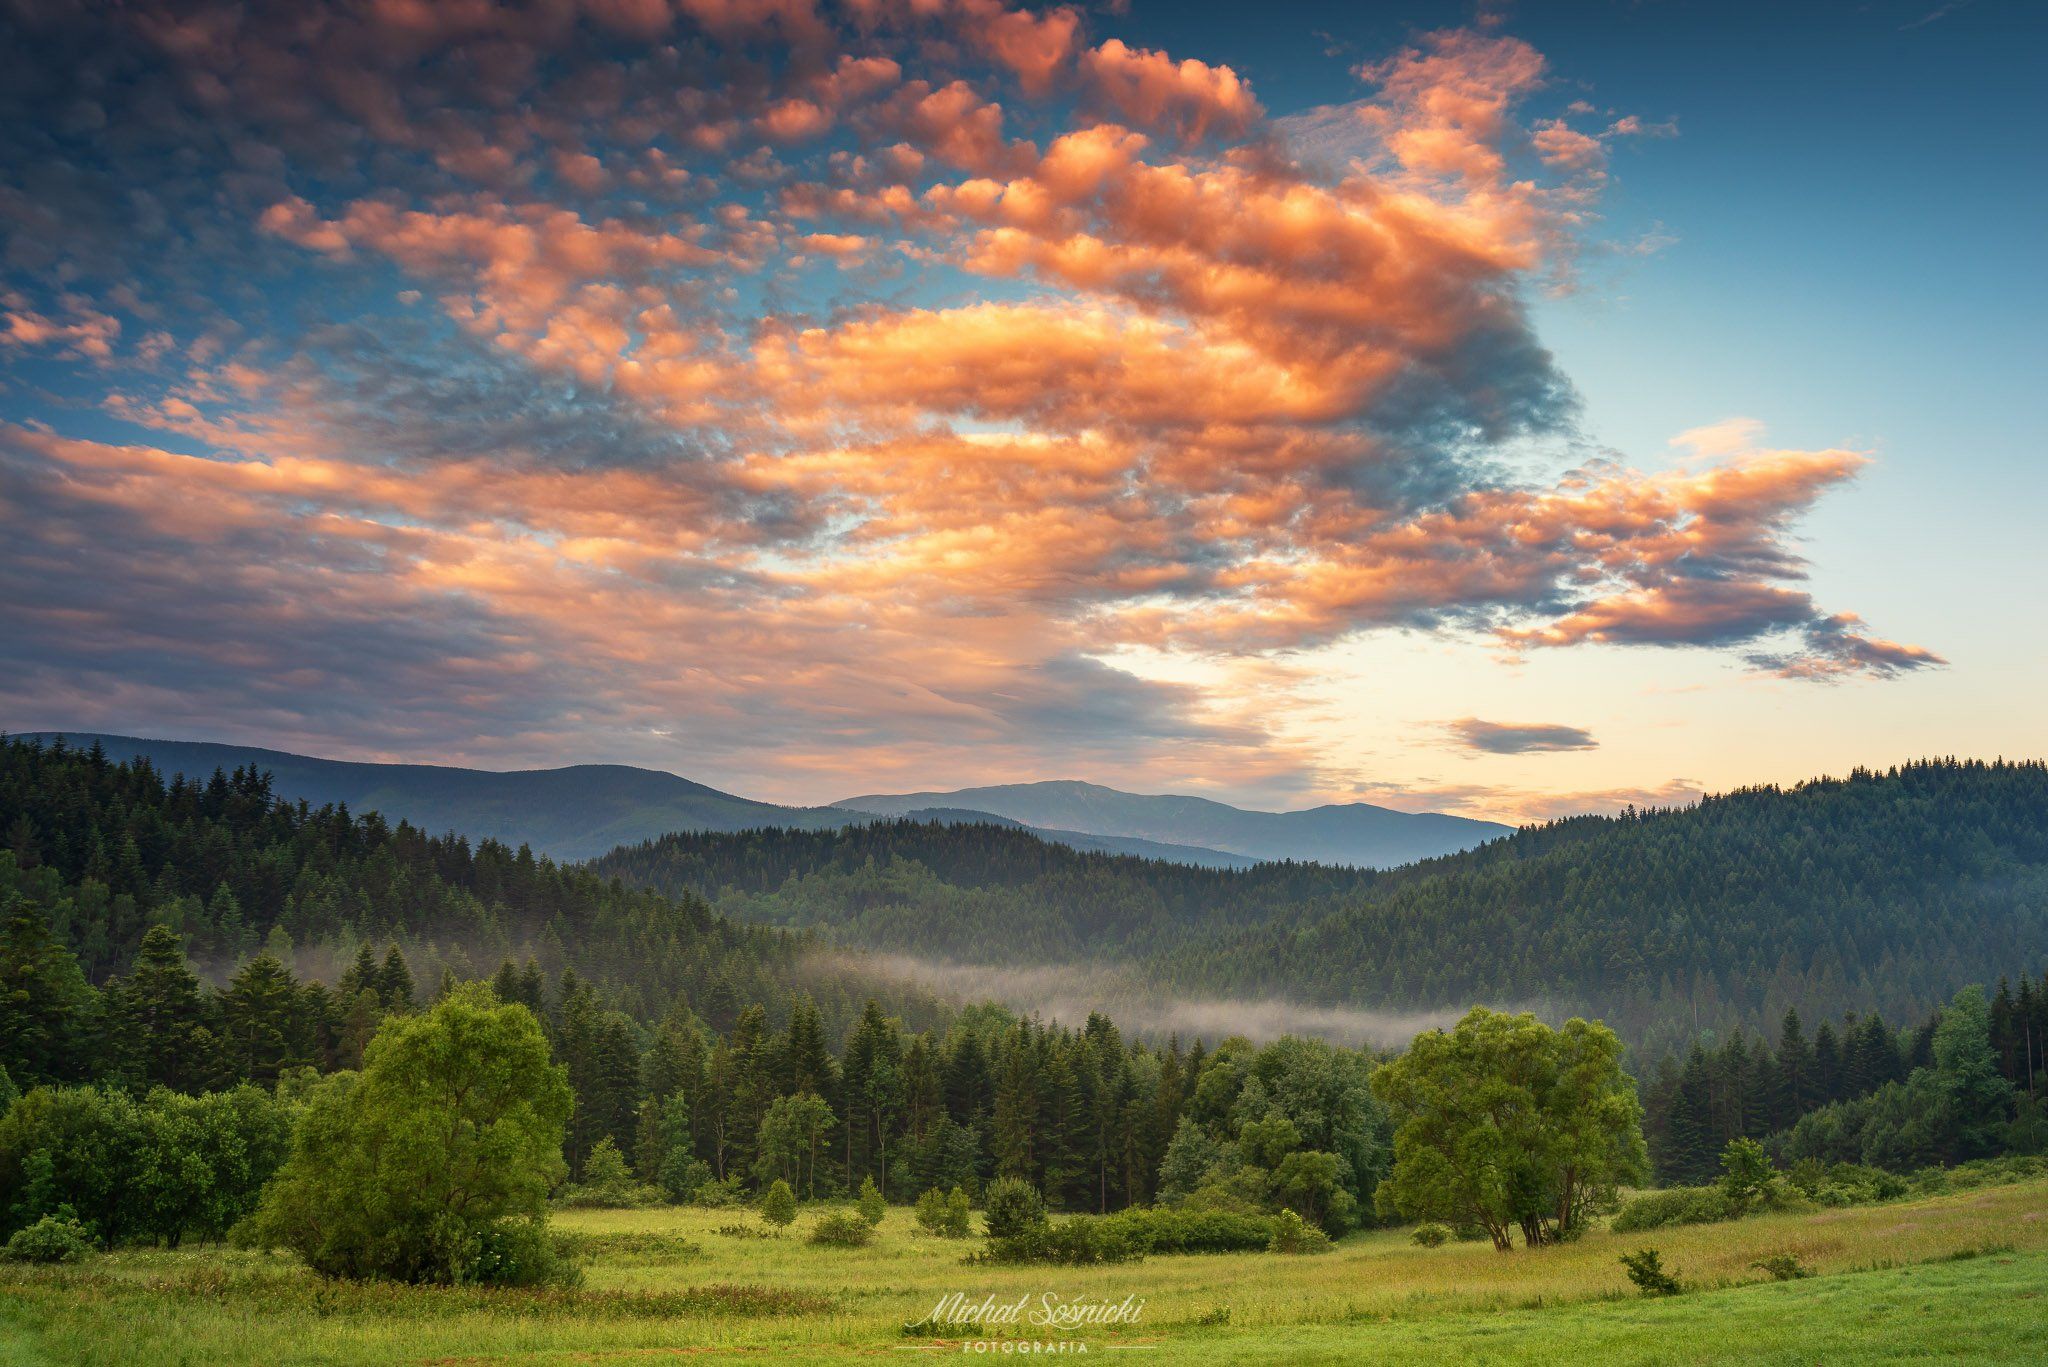 #sky #morning #sunrise #amazing #nature #pentax #benro #poland, Michał Sośnicki